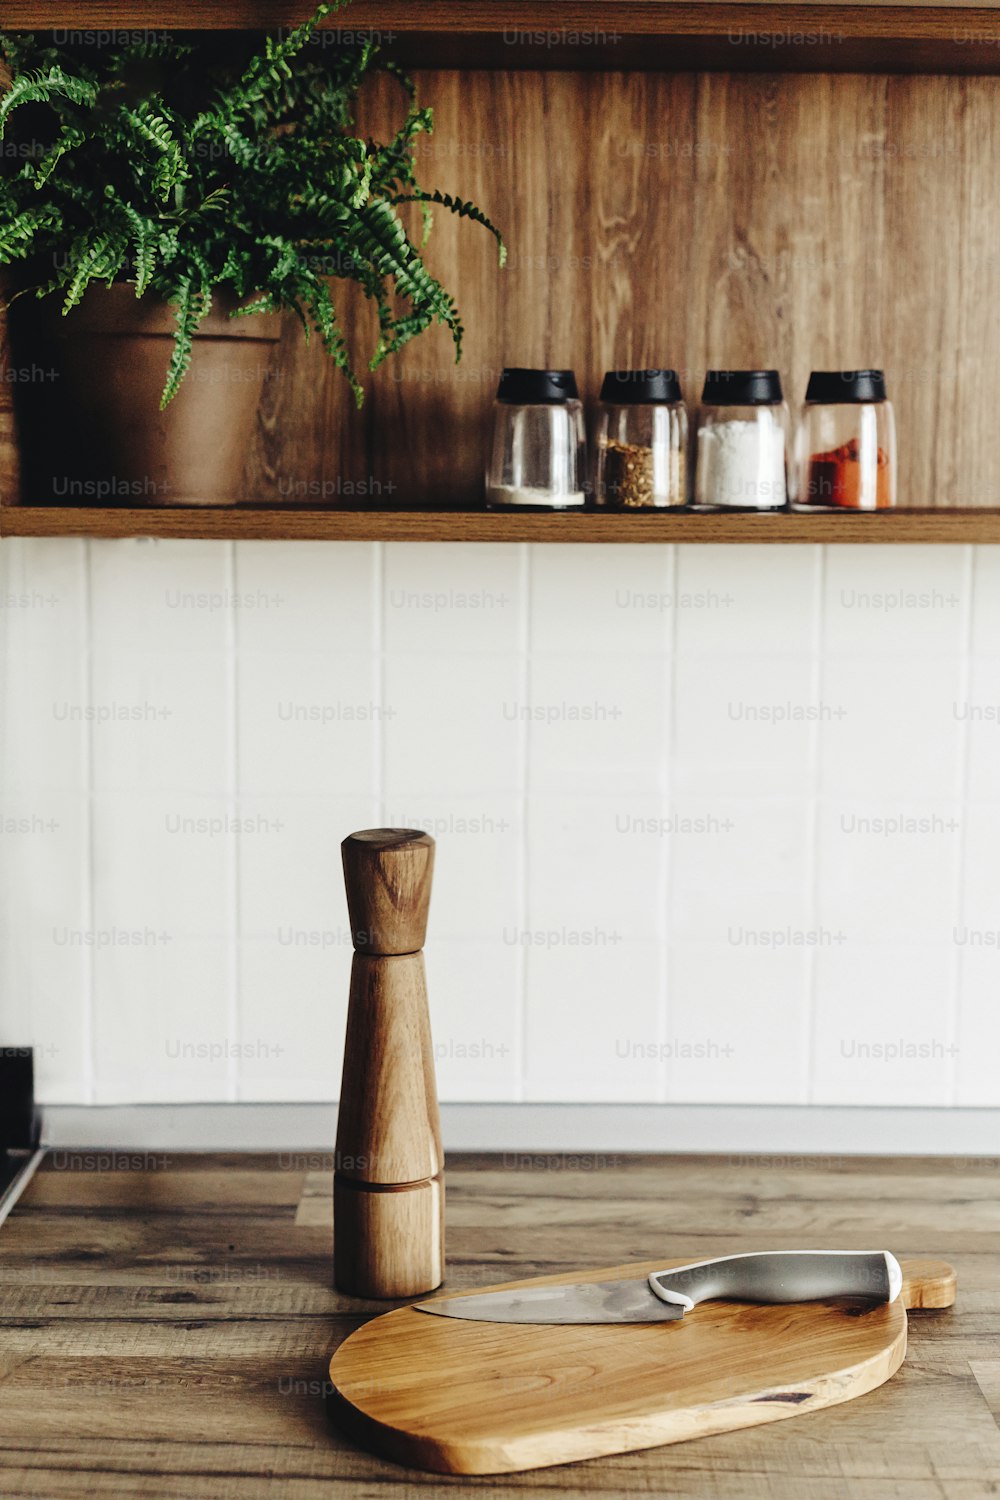 ナイフ付きの木の板、モダンなキッチンのカウンタートップに木製のペッパーミル、スパイスや植物が置かれた棚。食べ物を調理する。スカンジナビアスタイルのスタイリッシュなキッチンインテリアデザイン